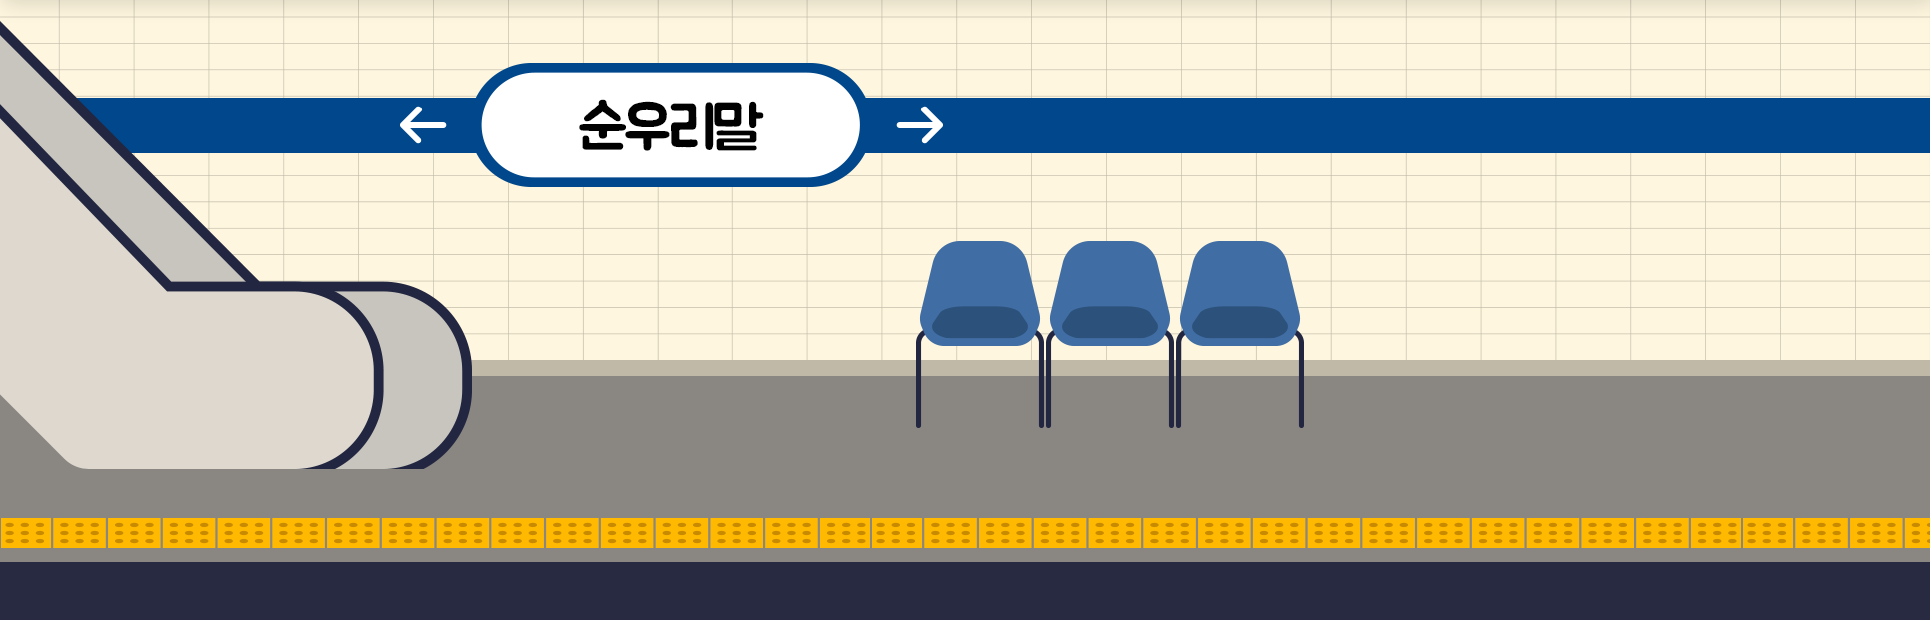 지하철역 내 지하철 타는 곳의 모습이 그려져 있다. 왼쪽엔 에스컬레이터가 있으며, 파란색 의자 3개가 놓여있다. 역을 지칭하는 곳에는 ‘순우리말’이라고 적혀있으며, 호선을 나타내는 색깔은 파란색으로 칠해져 있다.